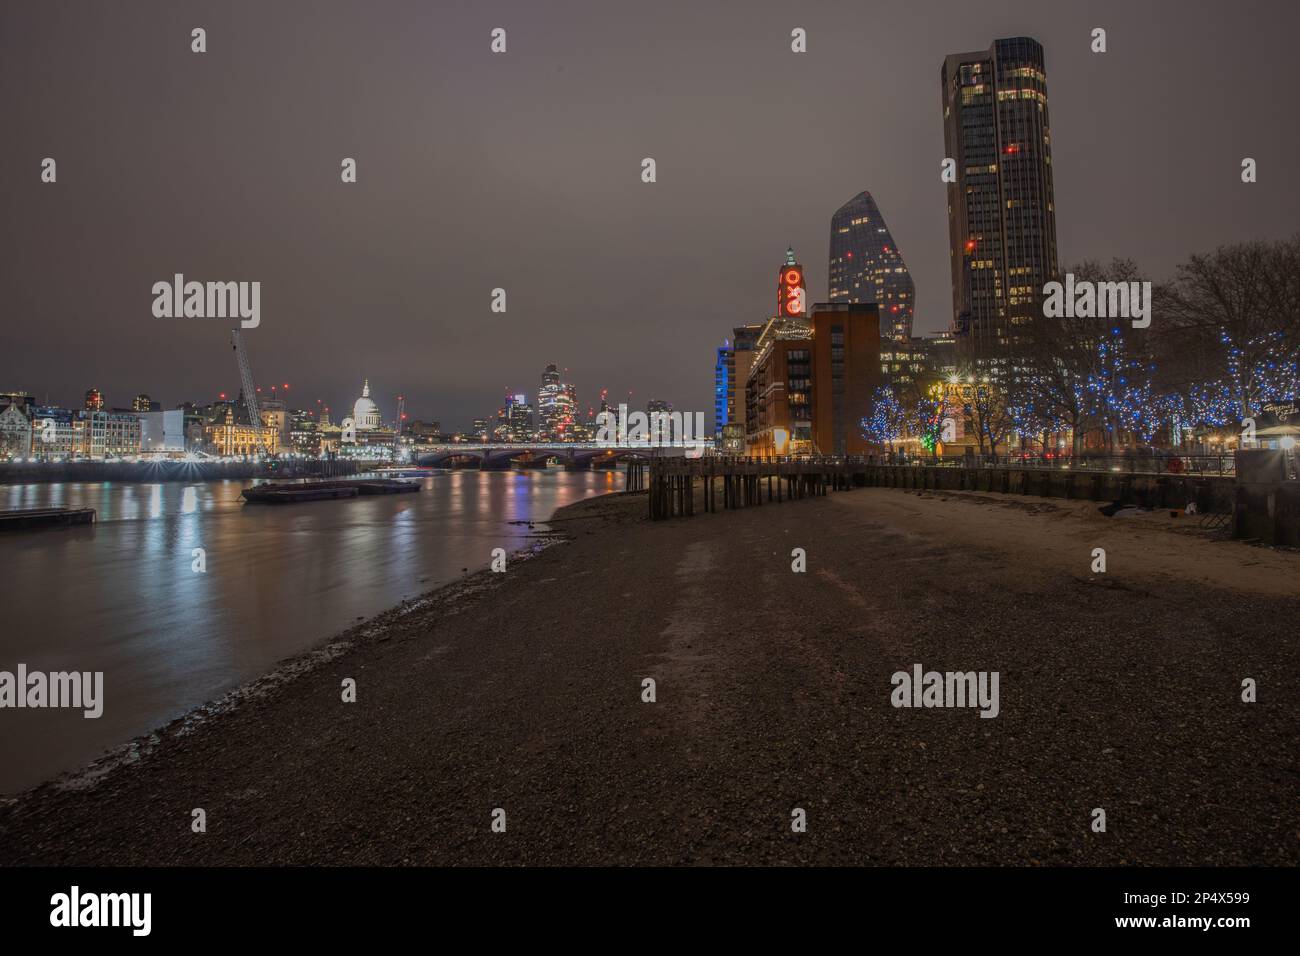 Landmarks in London - United Kingdom Stock Photo